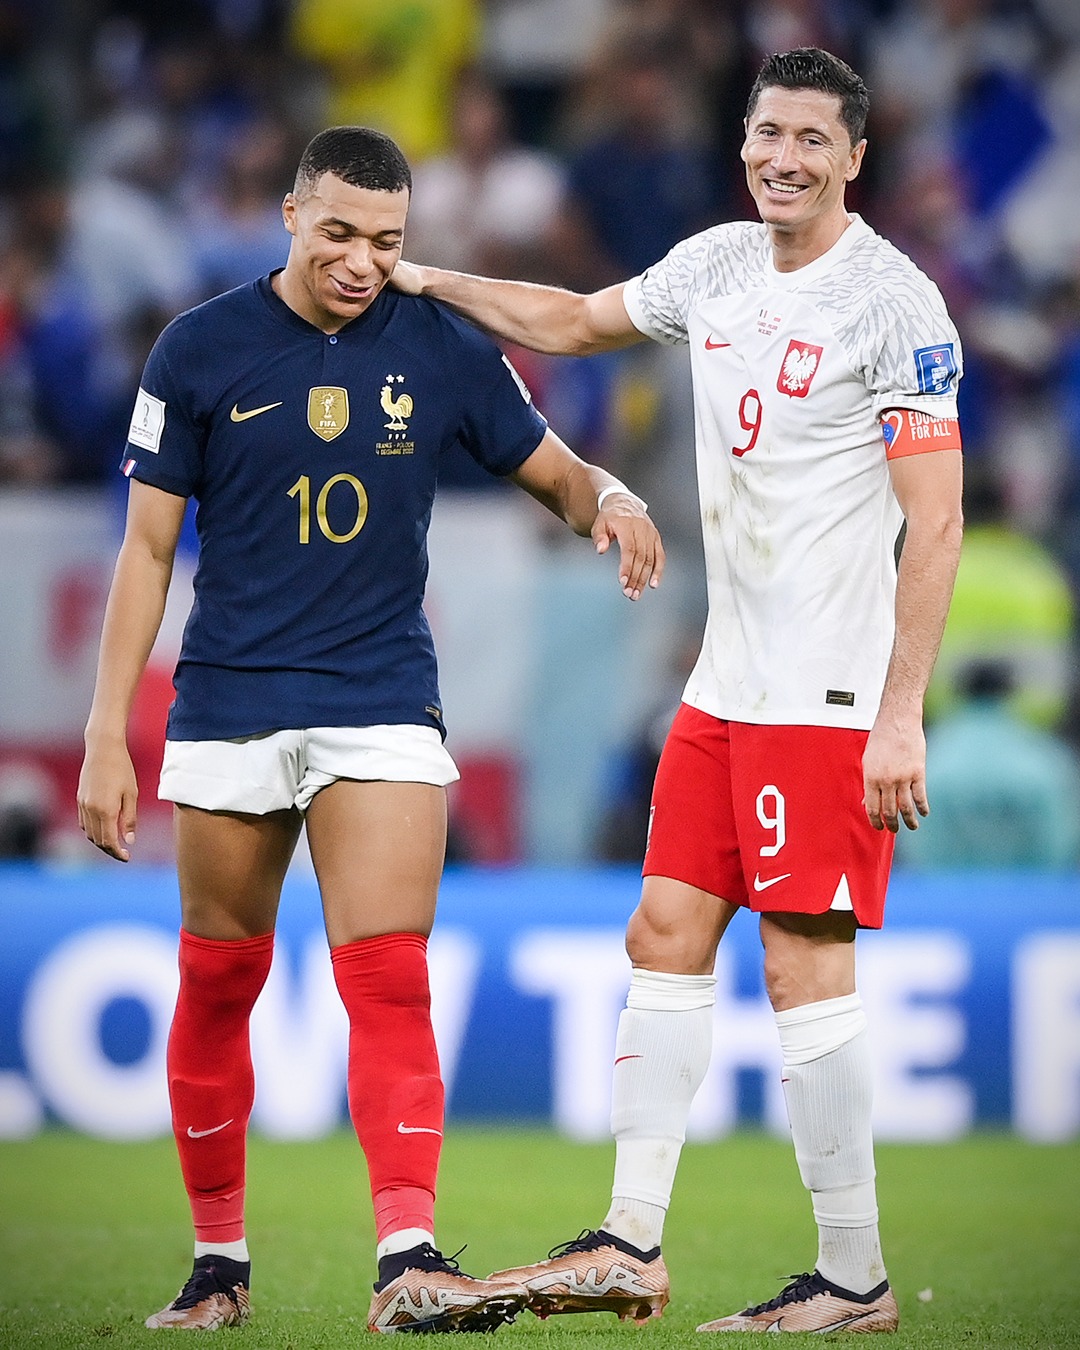 لقاء فرنسا × بولندا كامل في كأس العالم 2022 قطر بتعليق حسن العيدروس